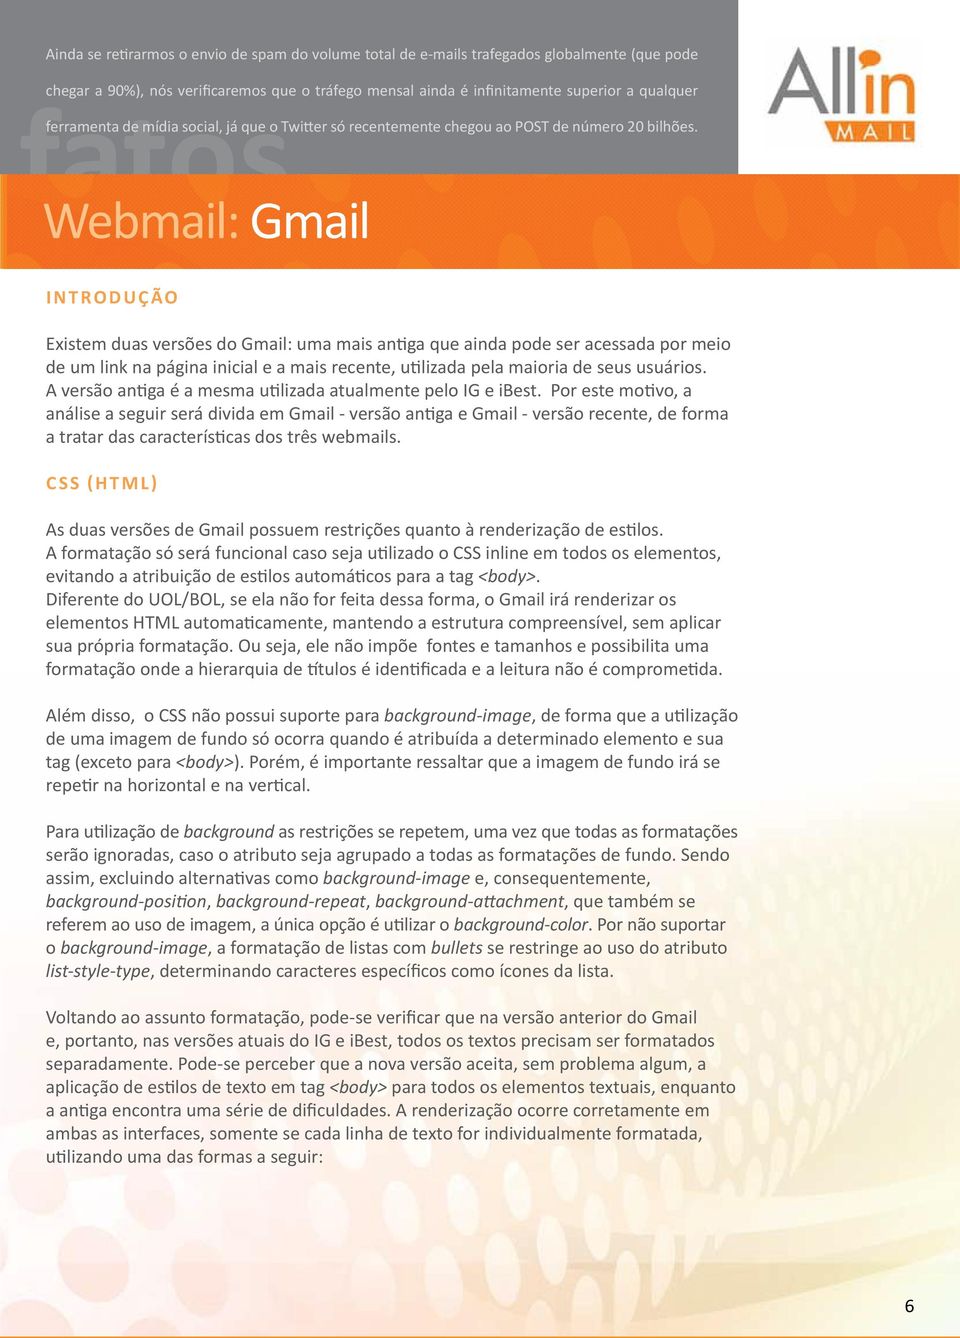 Webmail: Gmail I n t rodução Existem duas versões do Gmail: uma mais antiga que ainda pode ser acessada por meio de um link na página inicial e a mais recente, utilizada pela maioria de seus usuários.